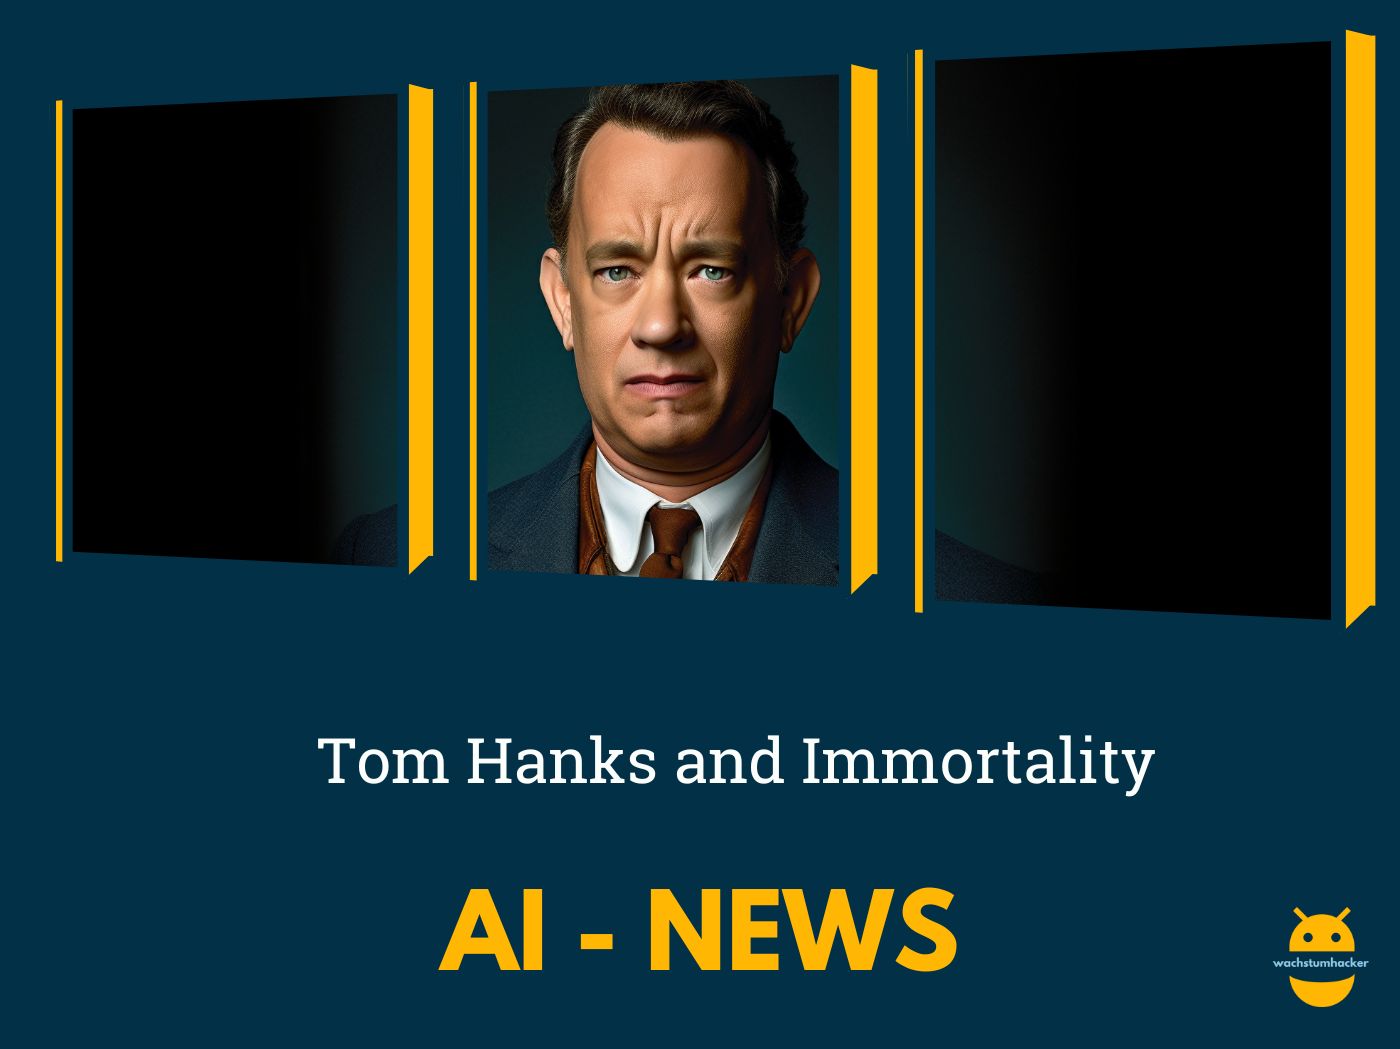 Künstliche Intelligenz in Film und Musik: Tom Hanks und die Unsterblichkeit auf der Leinwand